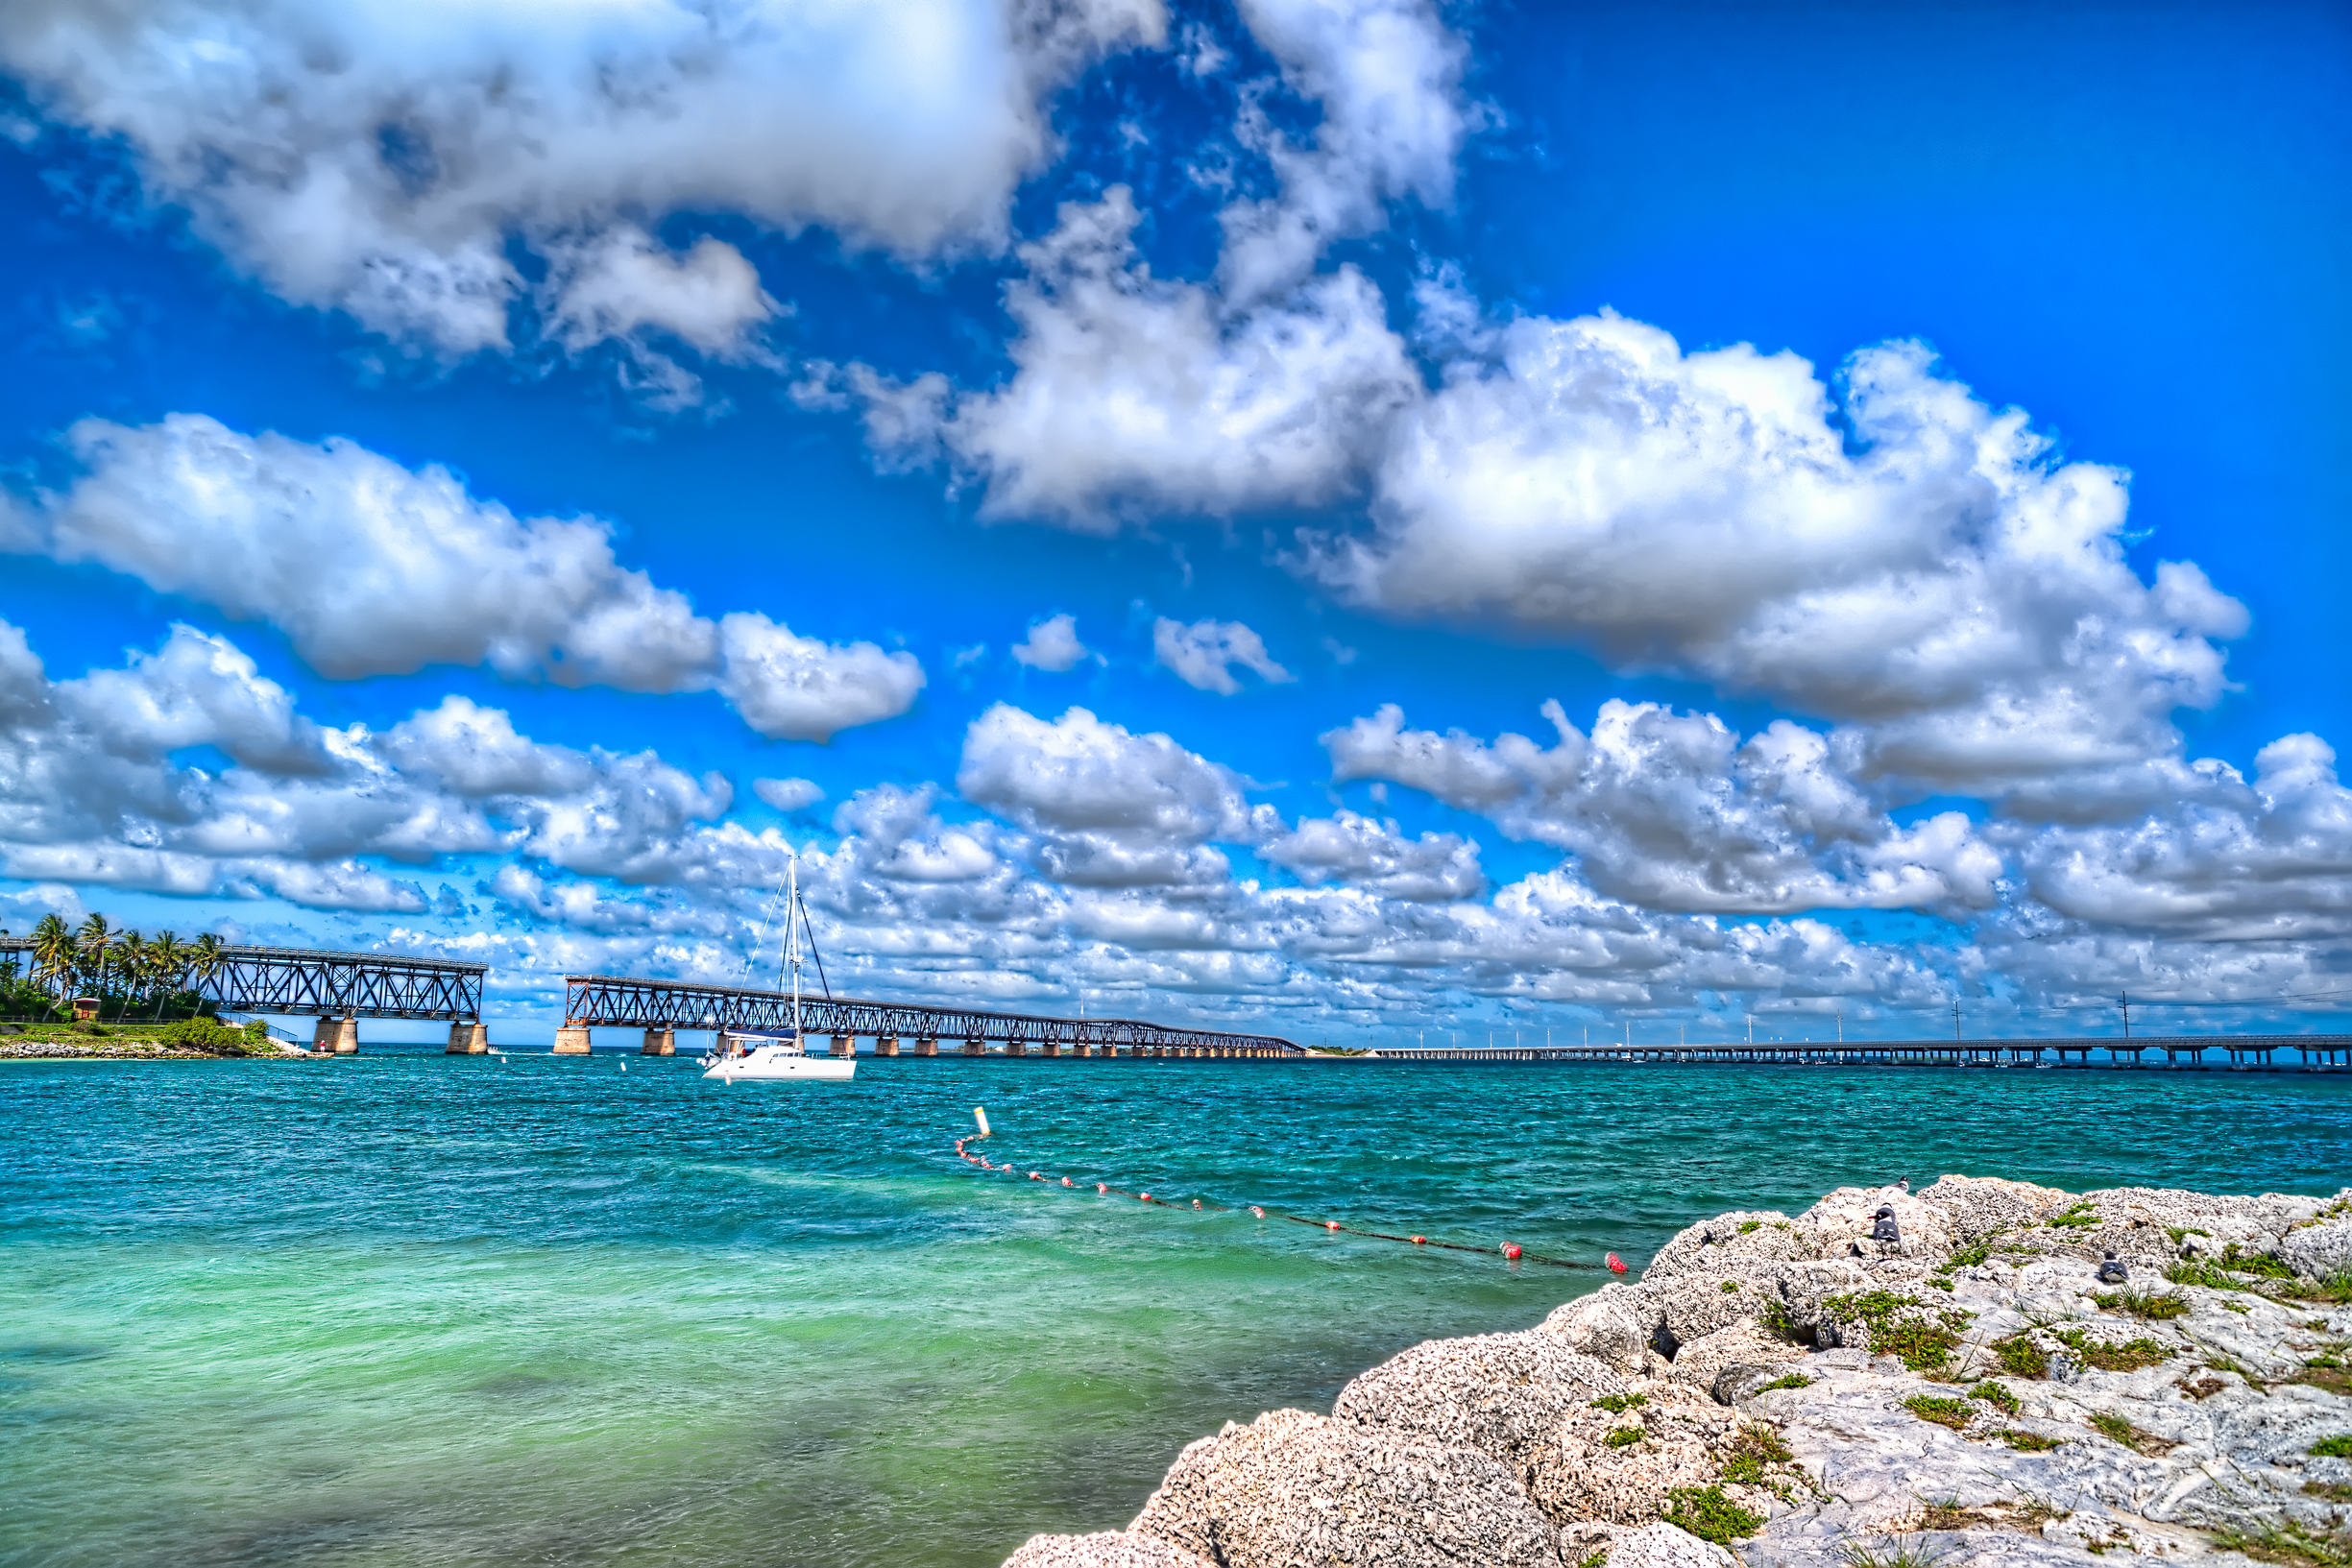 Florida Keys đẹp tuyệt vời: Florida Keys mang trong mình vẻ đẹp huyền bí và lãng mạn của cuộc sống ven biển. Với những bãi cát trắng mịn, những hòn đảo hoang sơ, những khu rạn san hô kỳ vĩ và những bổi cảnh đẹp như tranh, Florida Keys đang chờ đón bạn. Đừng bỏ lỡ cơ hội để thưởng thức vẻ đẹp tuyệt vời này qua hình ảnh.